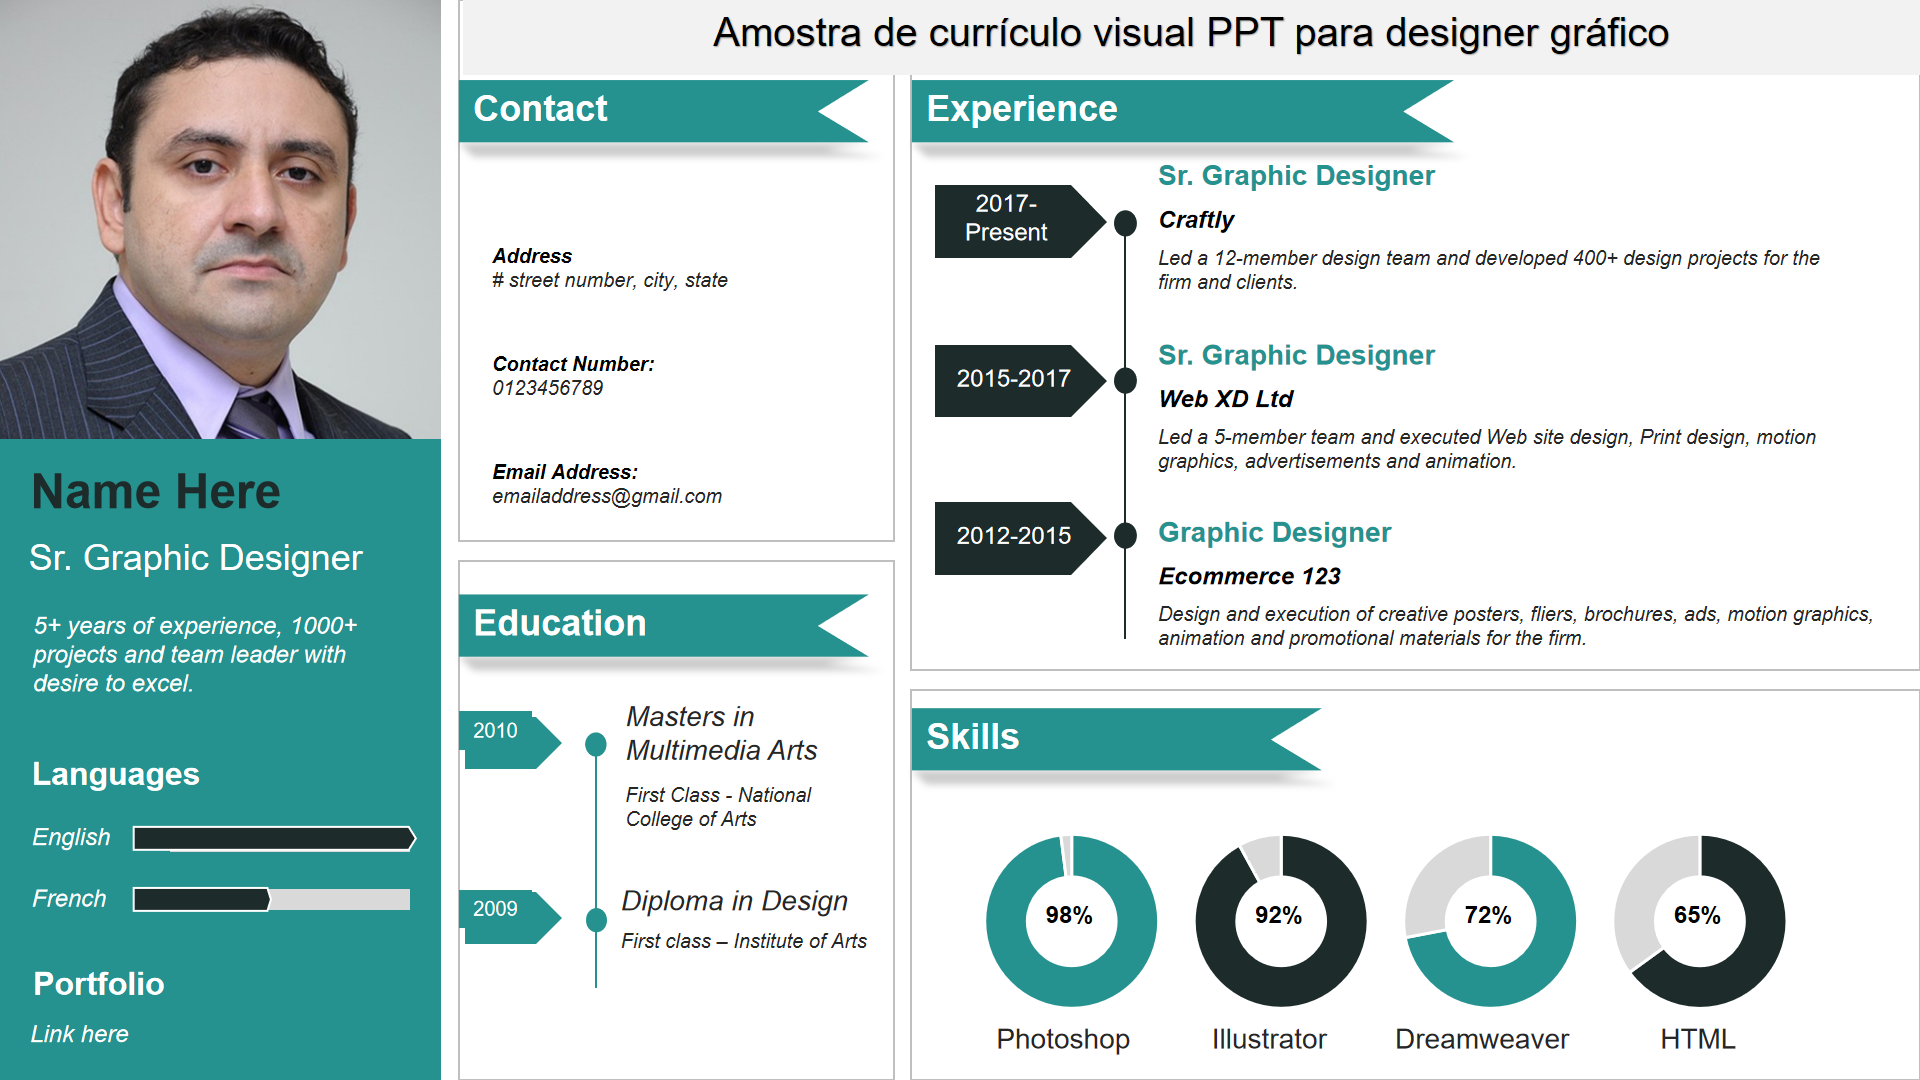 Amostra de currículo visual PPT para designer gráfico